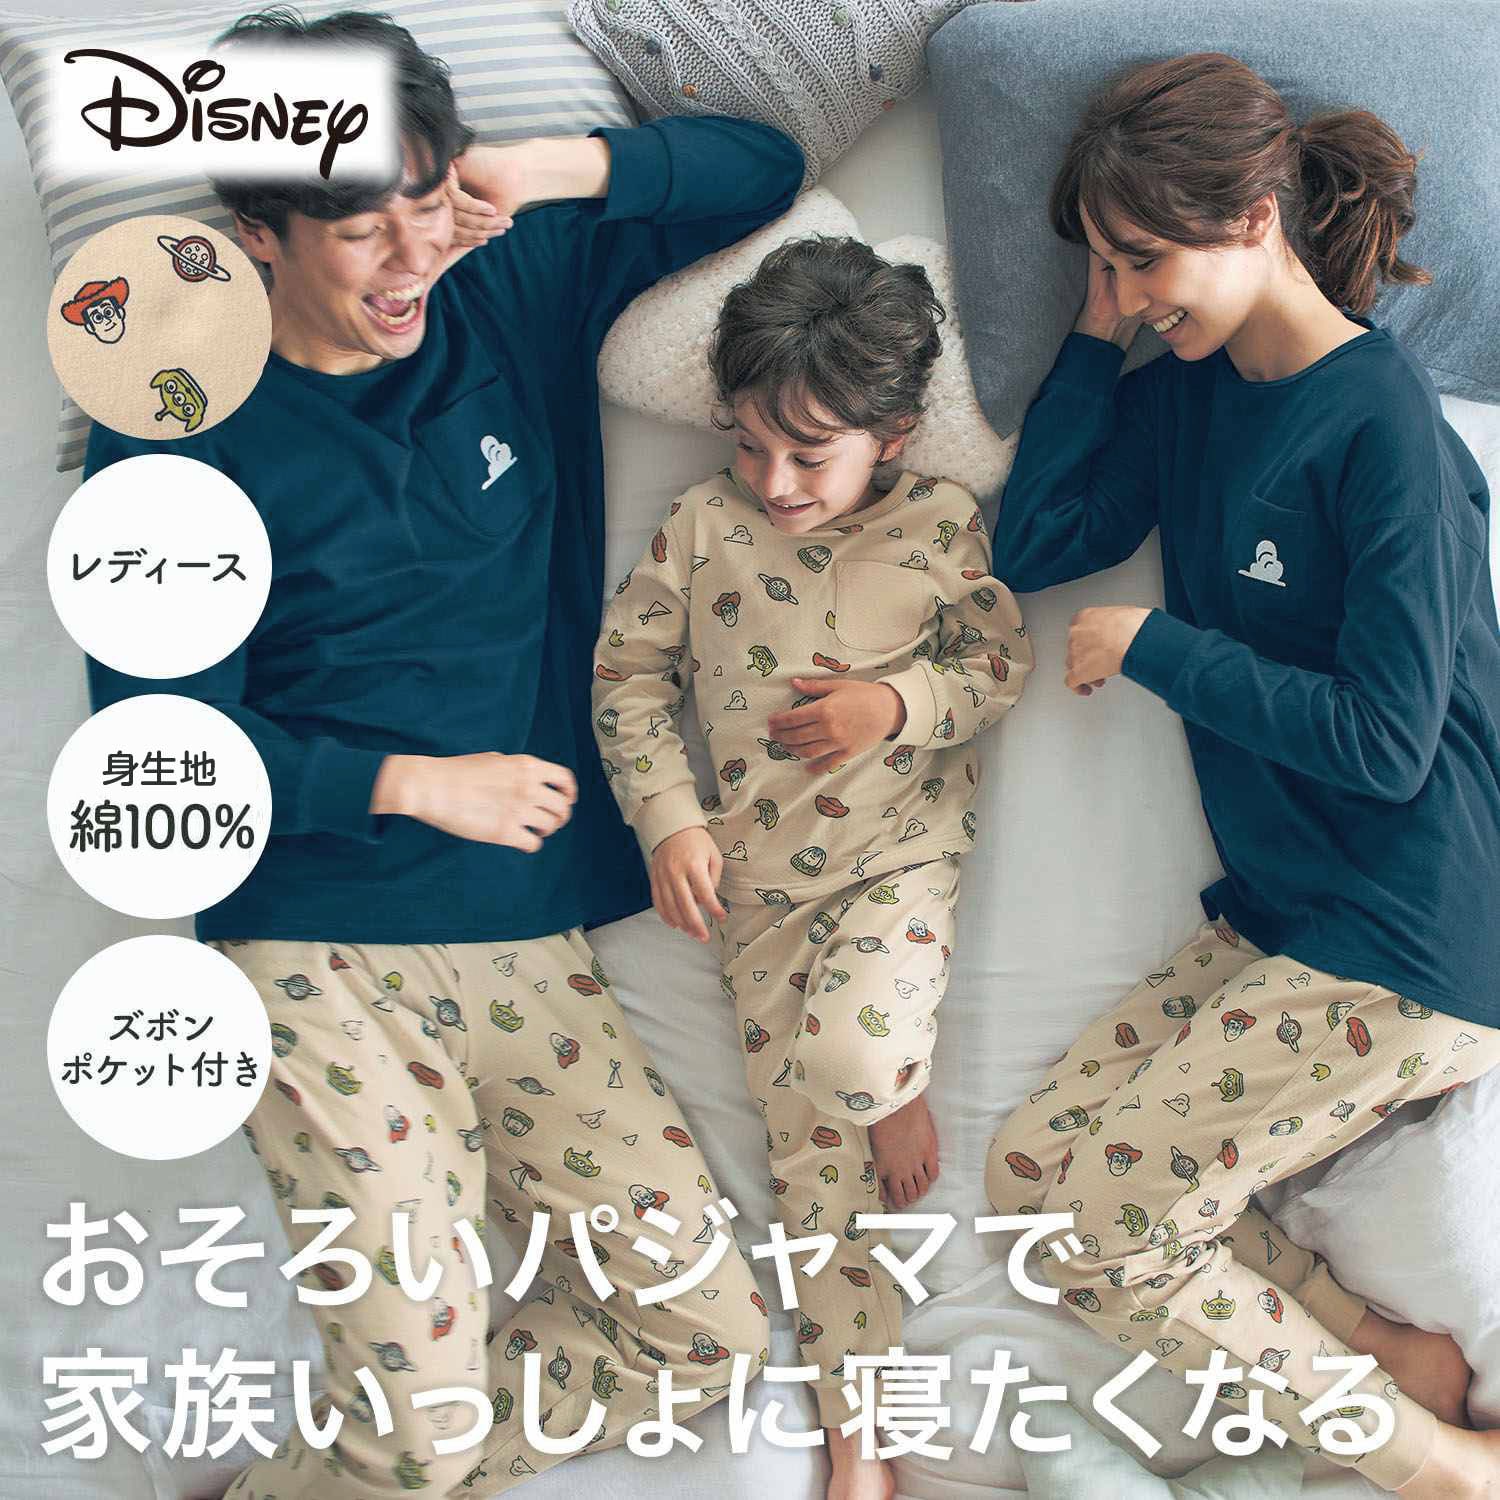 【ディズニー/Disney】レディースやわらか綿長袖パジャマ(選べるキャラクター)画像